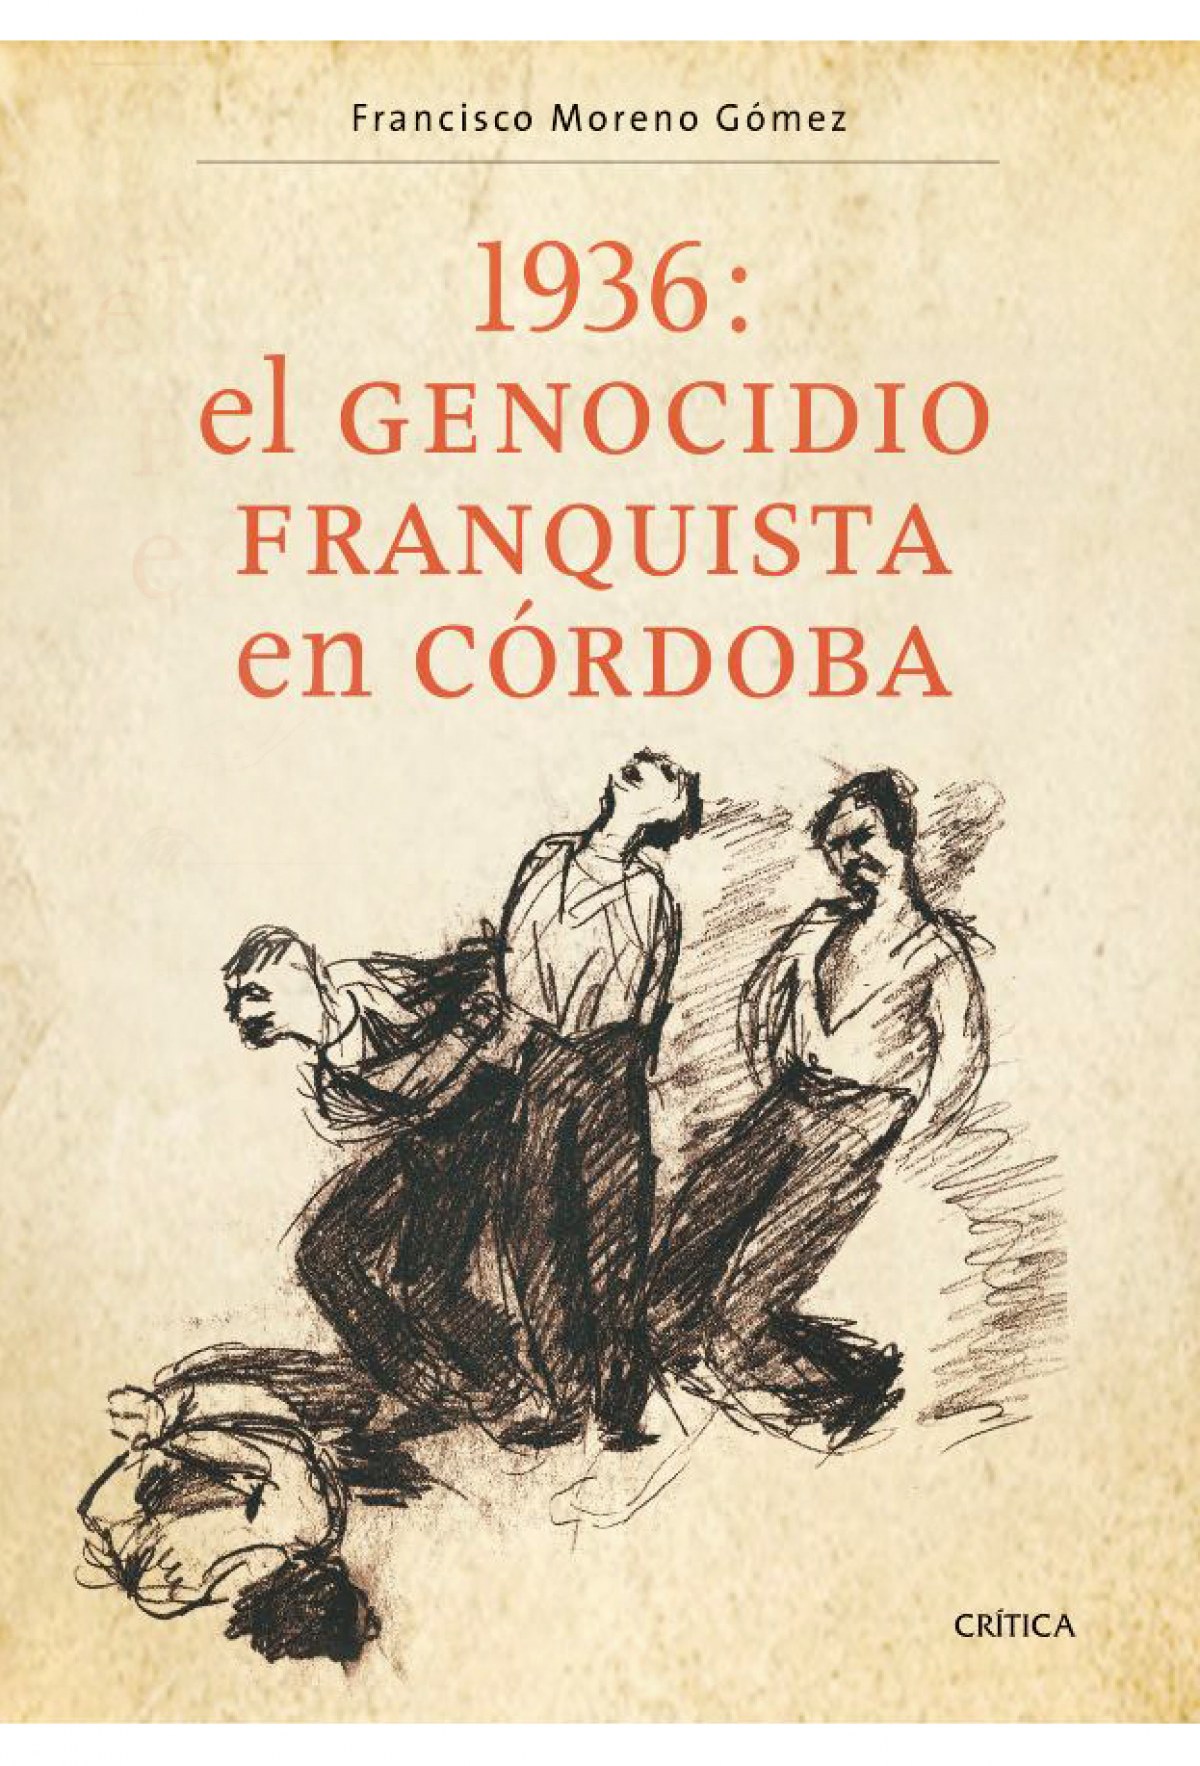 1936: El genocidio franquista en Córdoba - Francisco Moreno Gómez